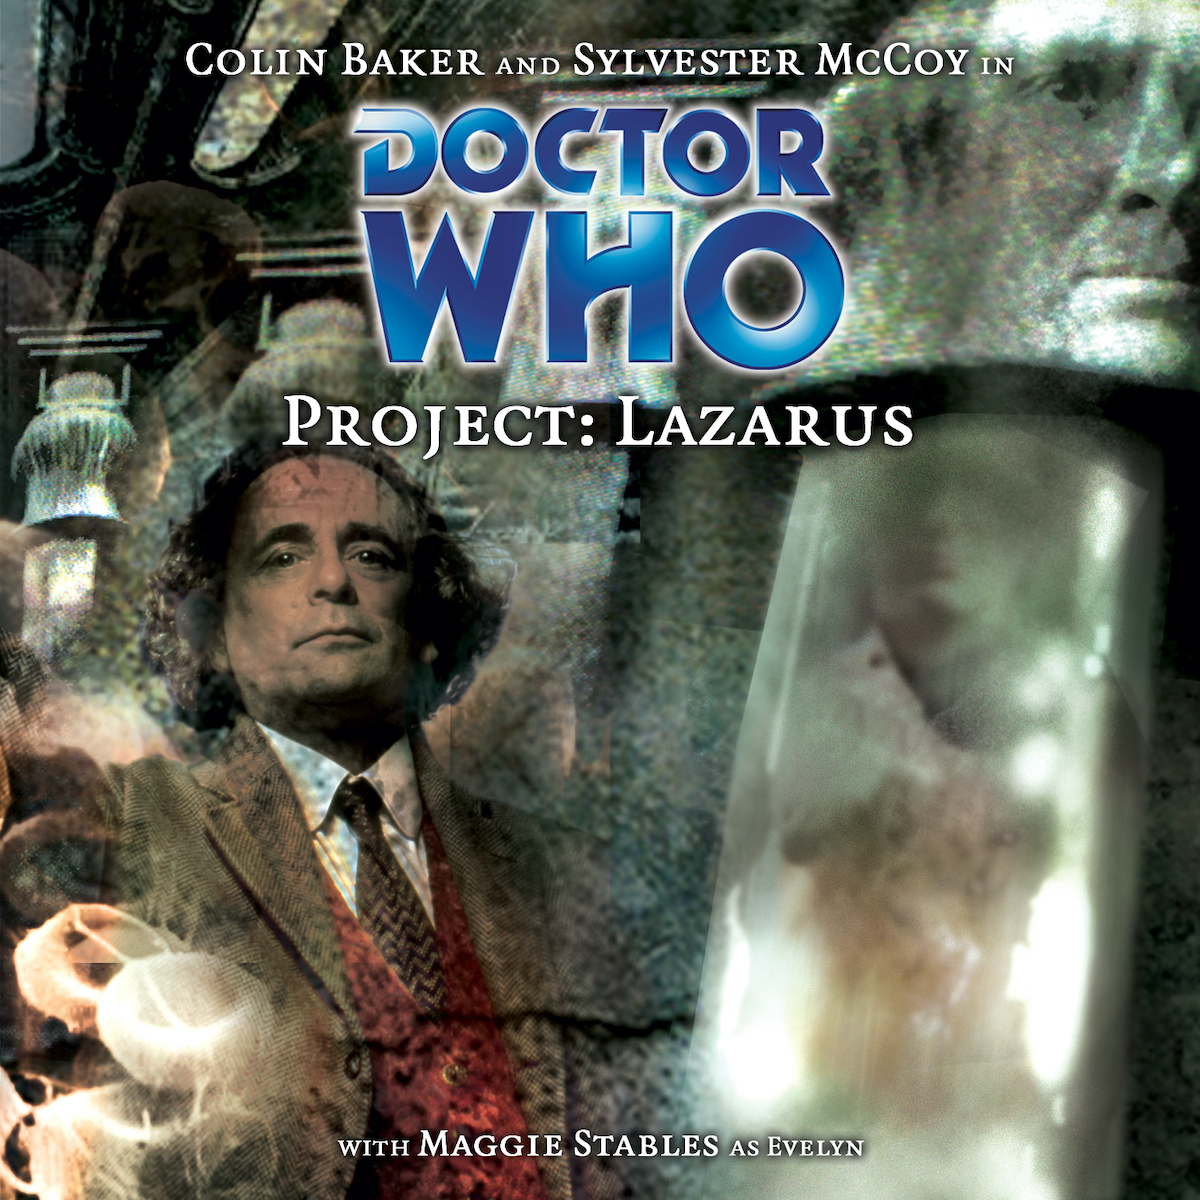 Project Lazarus